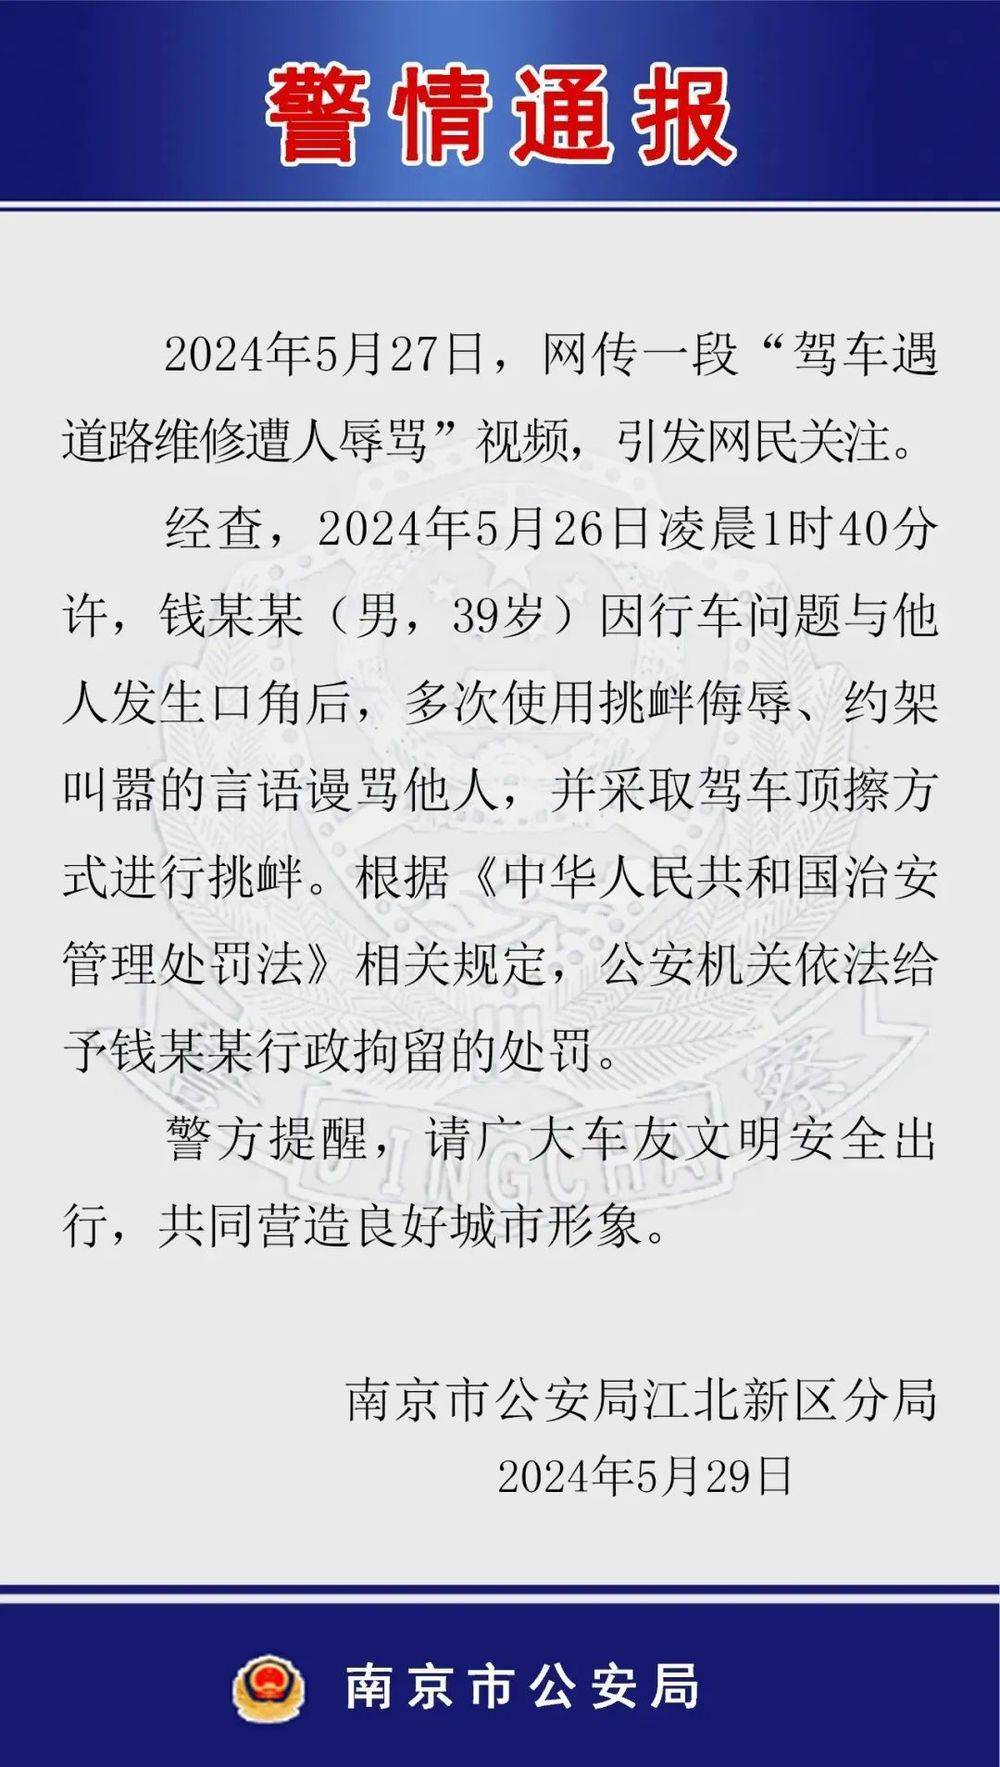 辱骂威胁车主 花臂男 滚出南京 南京警方通报 行政拘留